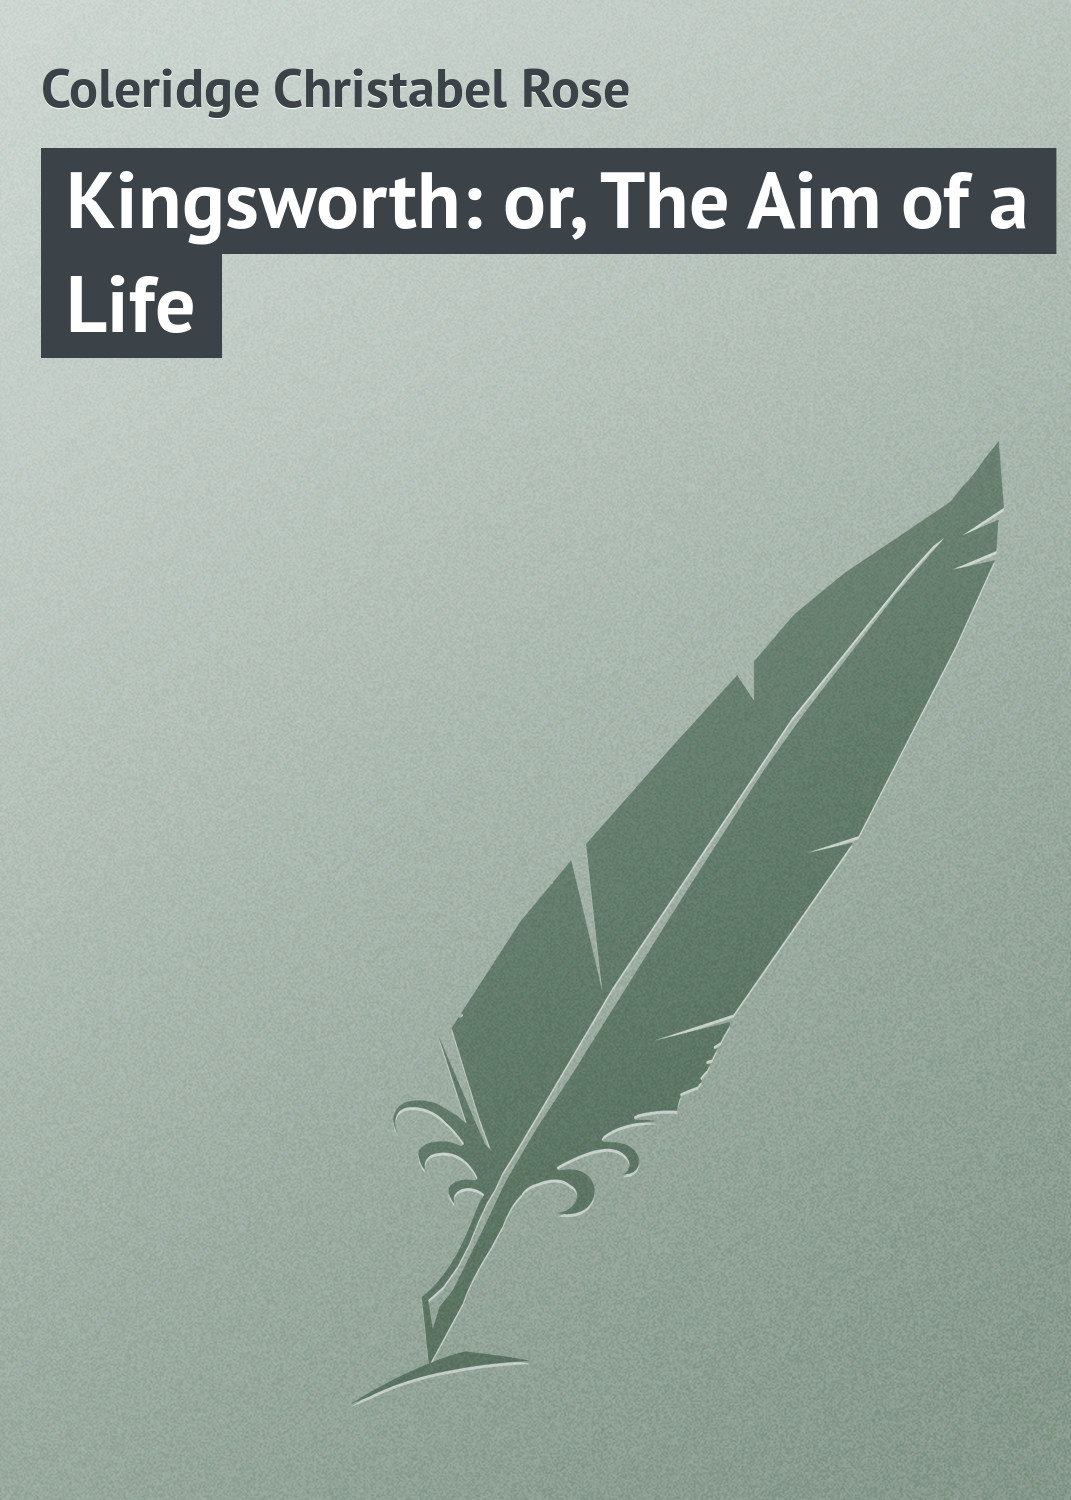 Книга Kingsworth: or, The Aim of a Life из серии , созданная Christabel Coleridge, может относится к жанру Зарубежная классика. Стоимость электронной книги Kingsworth: or, The Aim of a Life с идентификатором 23149491 составляет 5.99 руб.